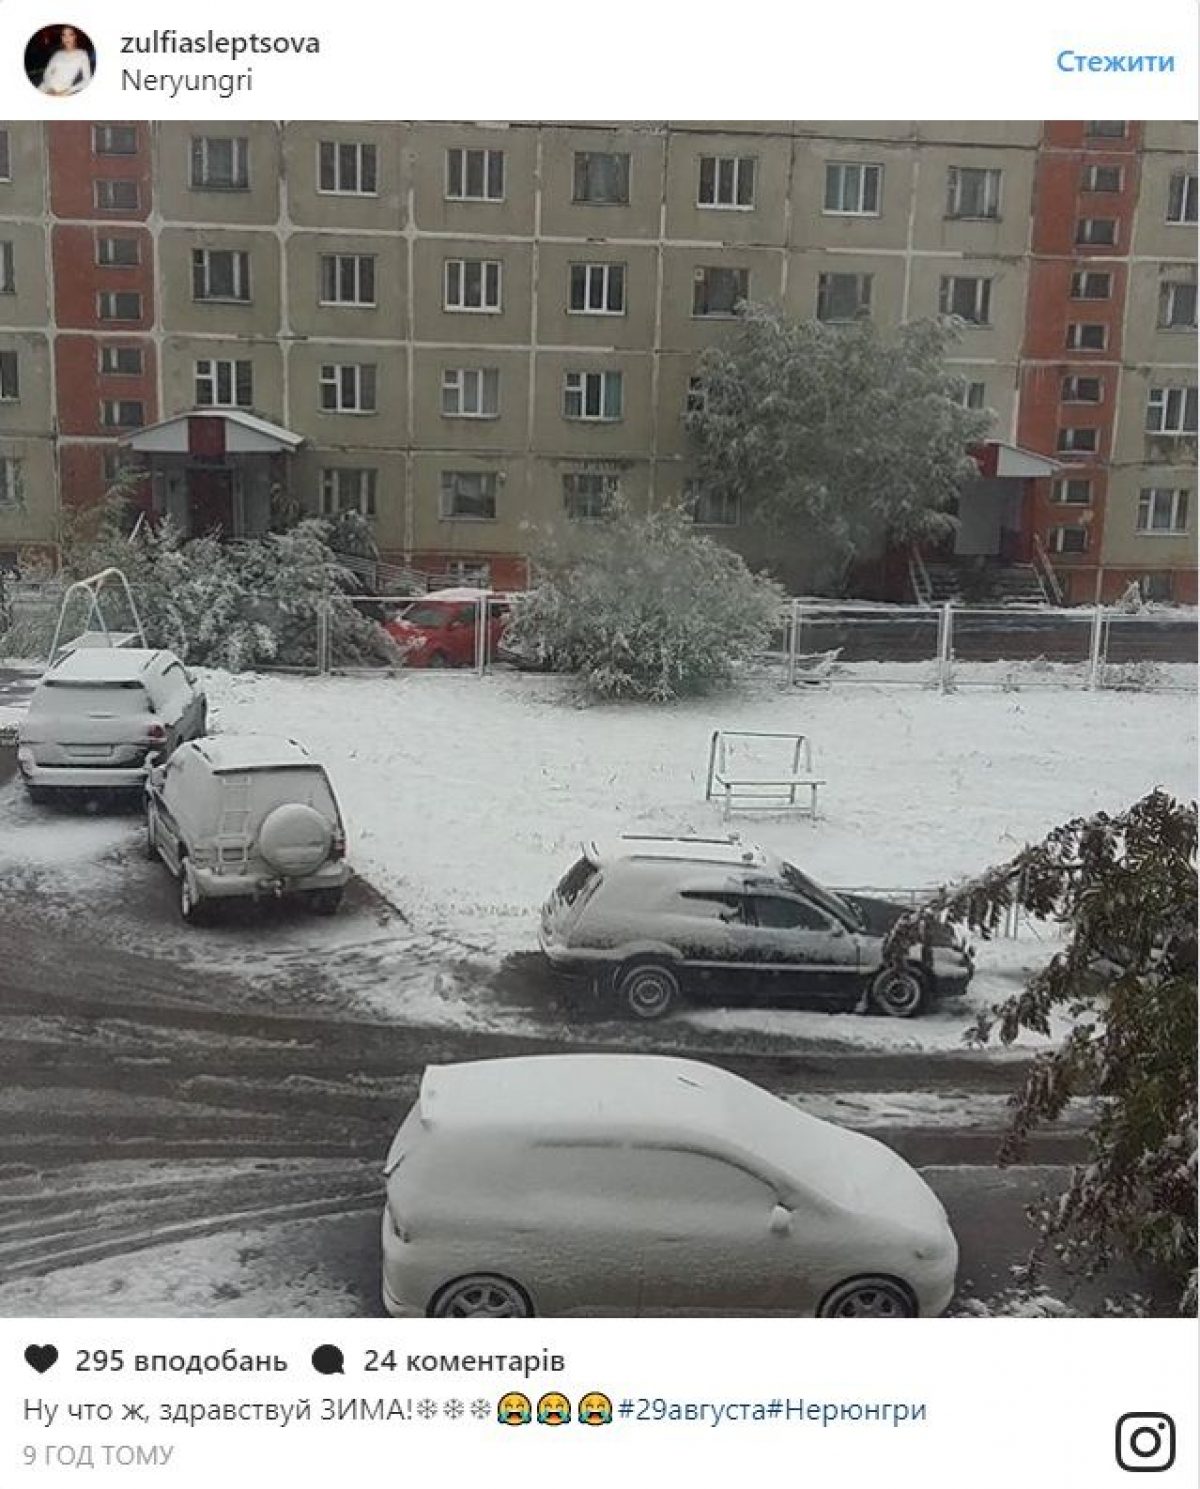 В россии выпадет снег. Нерюнгри снег летом. Снег летом в России. Снегопад летом. Летом выпал снег в России.